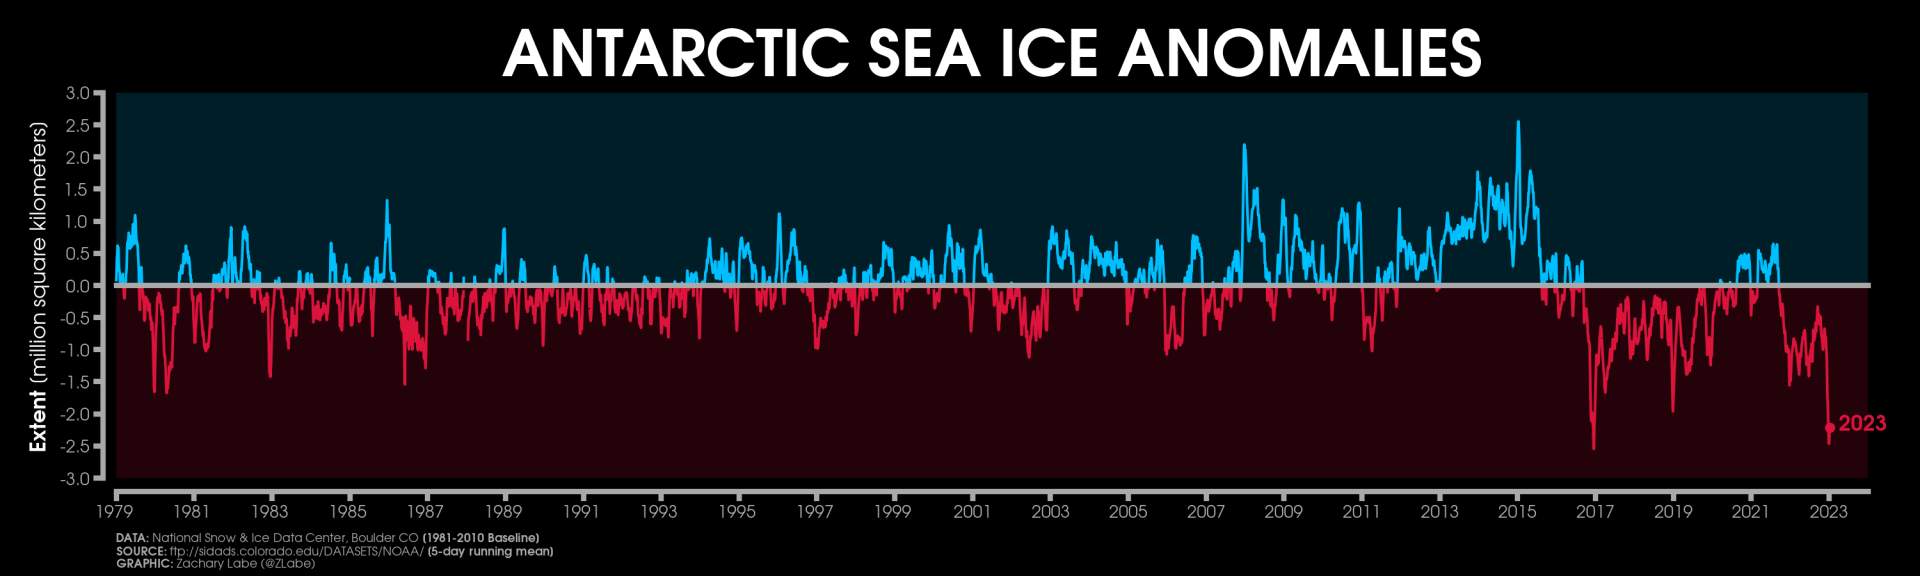 Abb. 1: Anomalie der antarktischen Meereisausdehnung seit 1979, (Bildquelle: zacklabe.com); Quelle: zacklabe.com